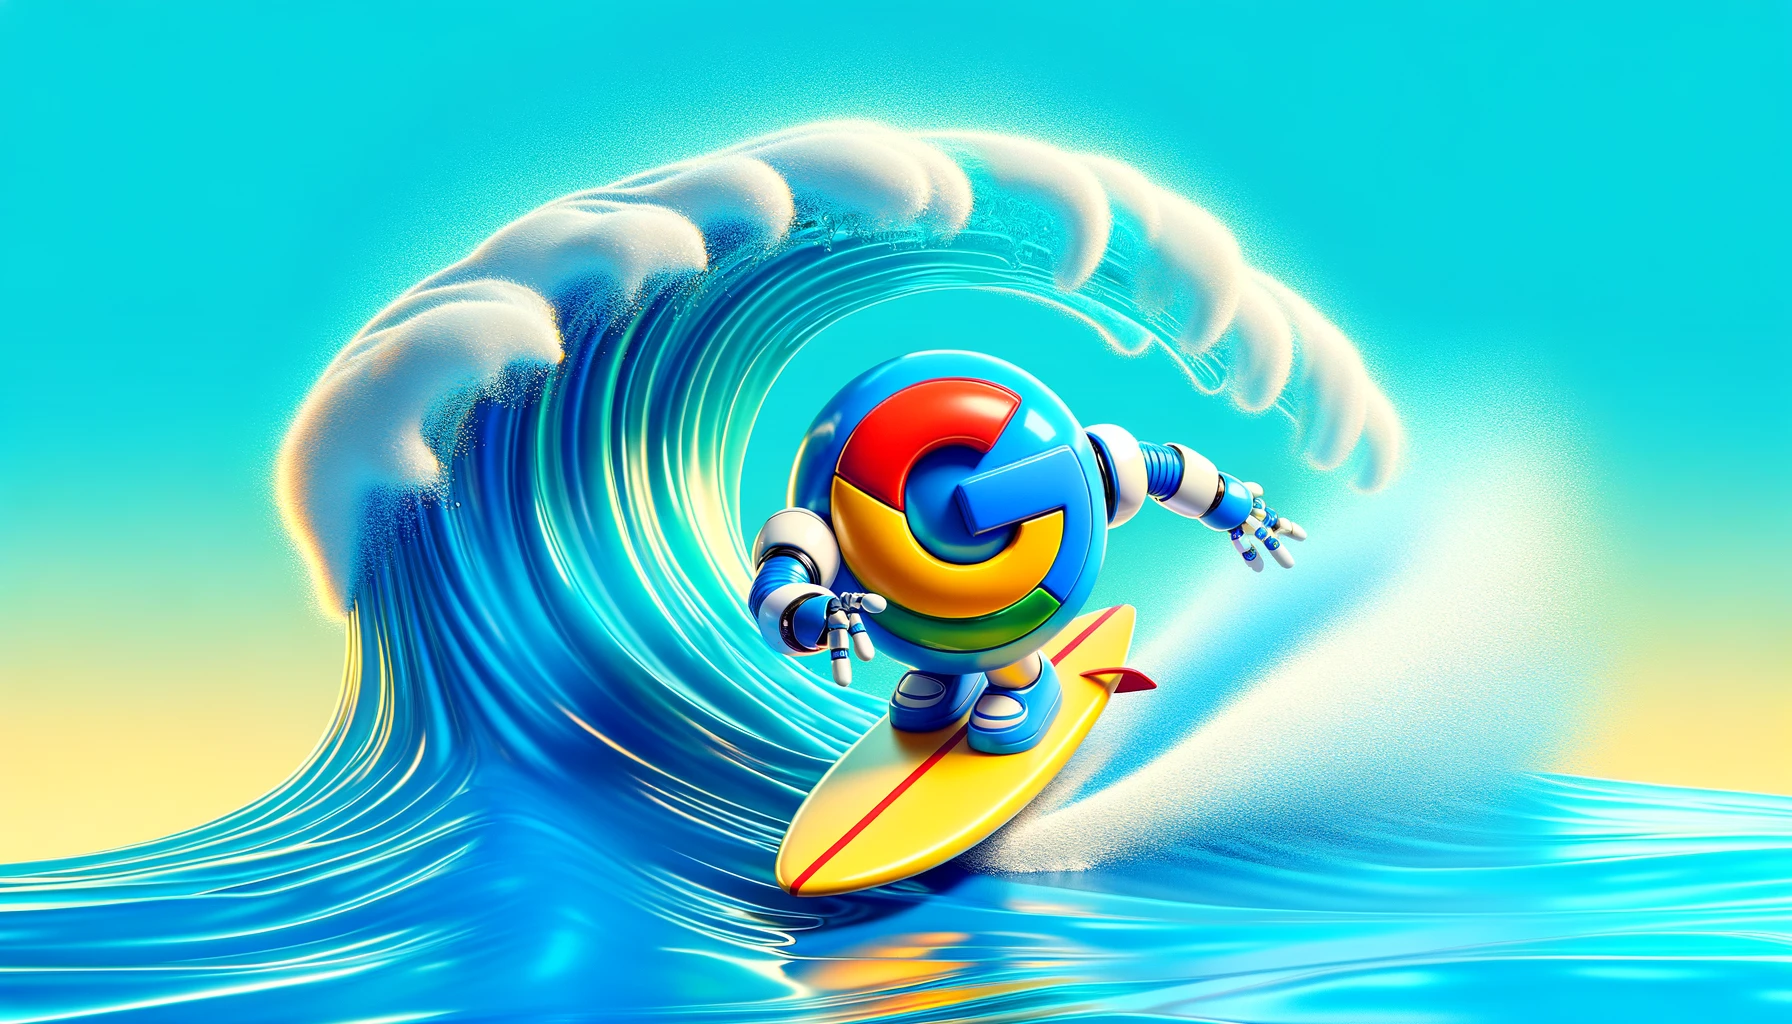 robot google en train de surfer, métaphore du SEO et de la génération de leads